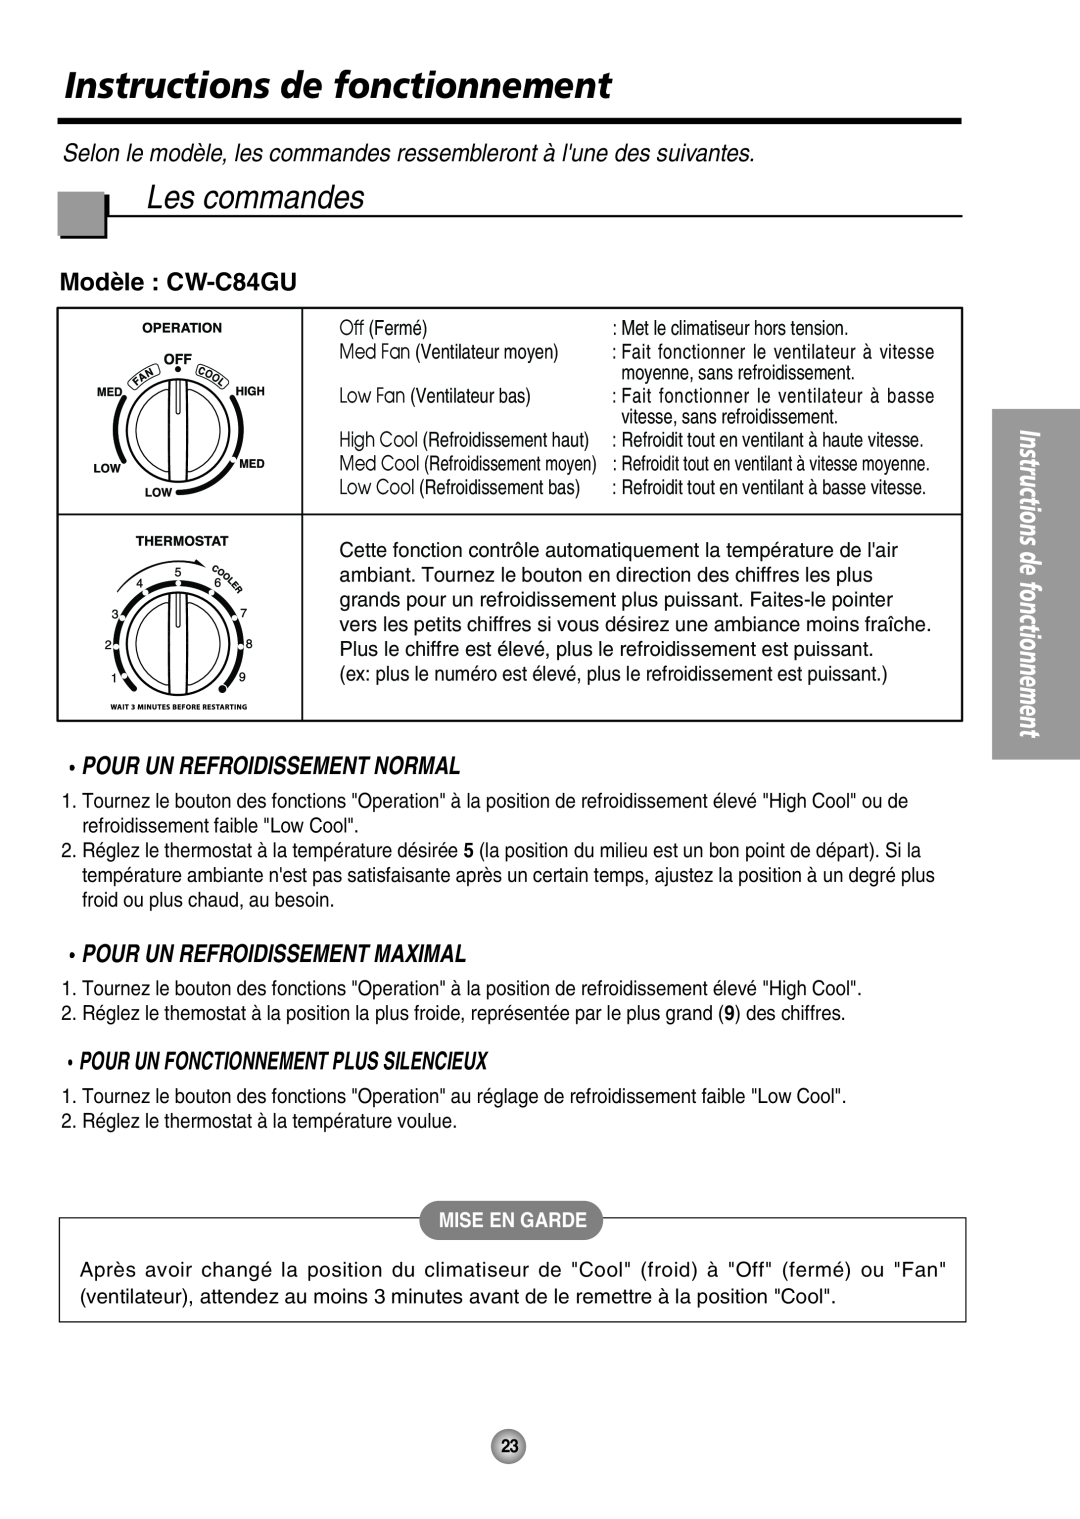 Panasonic CW-XC64HU manual Instructions de fonctionnement, Les commandes, Modèle : CW-C84GU, Pour Un Refroidissement Normal 